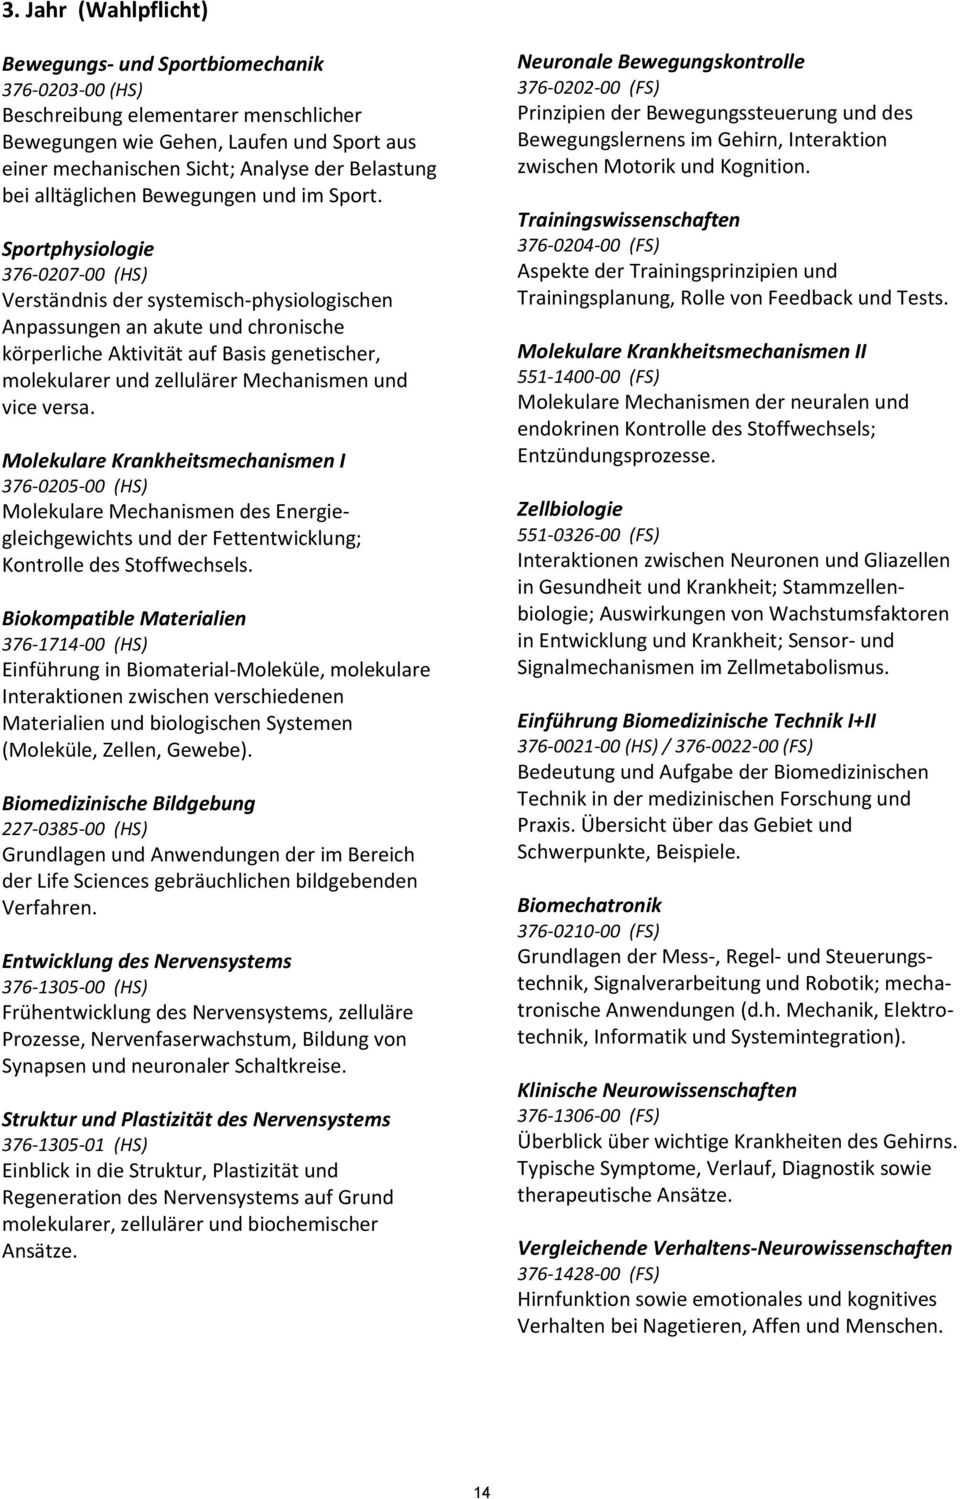 Sportphysiologie 376-0207-00 (HS) Verständnis der systemisch-physiologischen Anpassungen an akute und chronische körperliche Aktivität auf Basis genetischer, molekularer und zellulärer Mechanismen